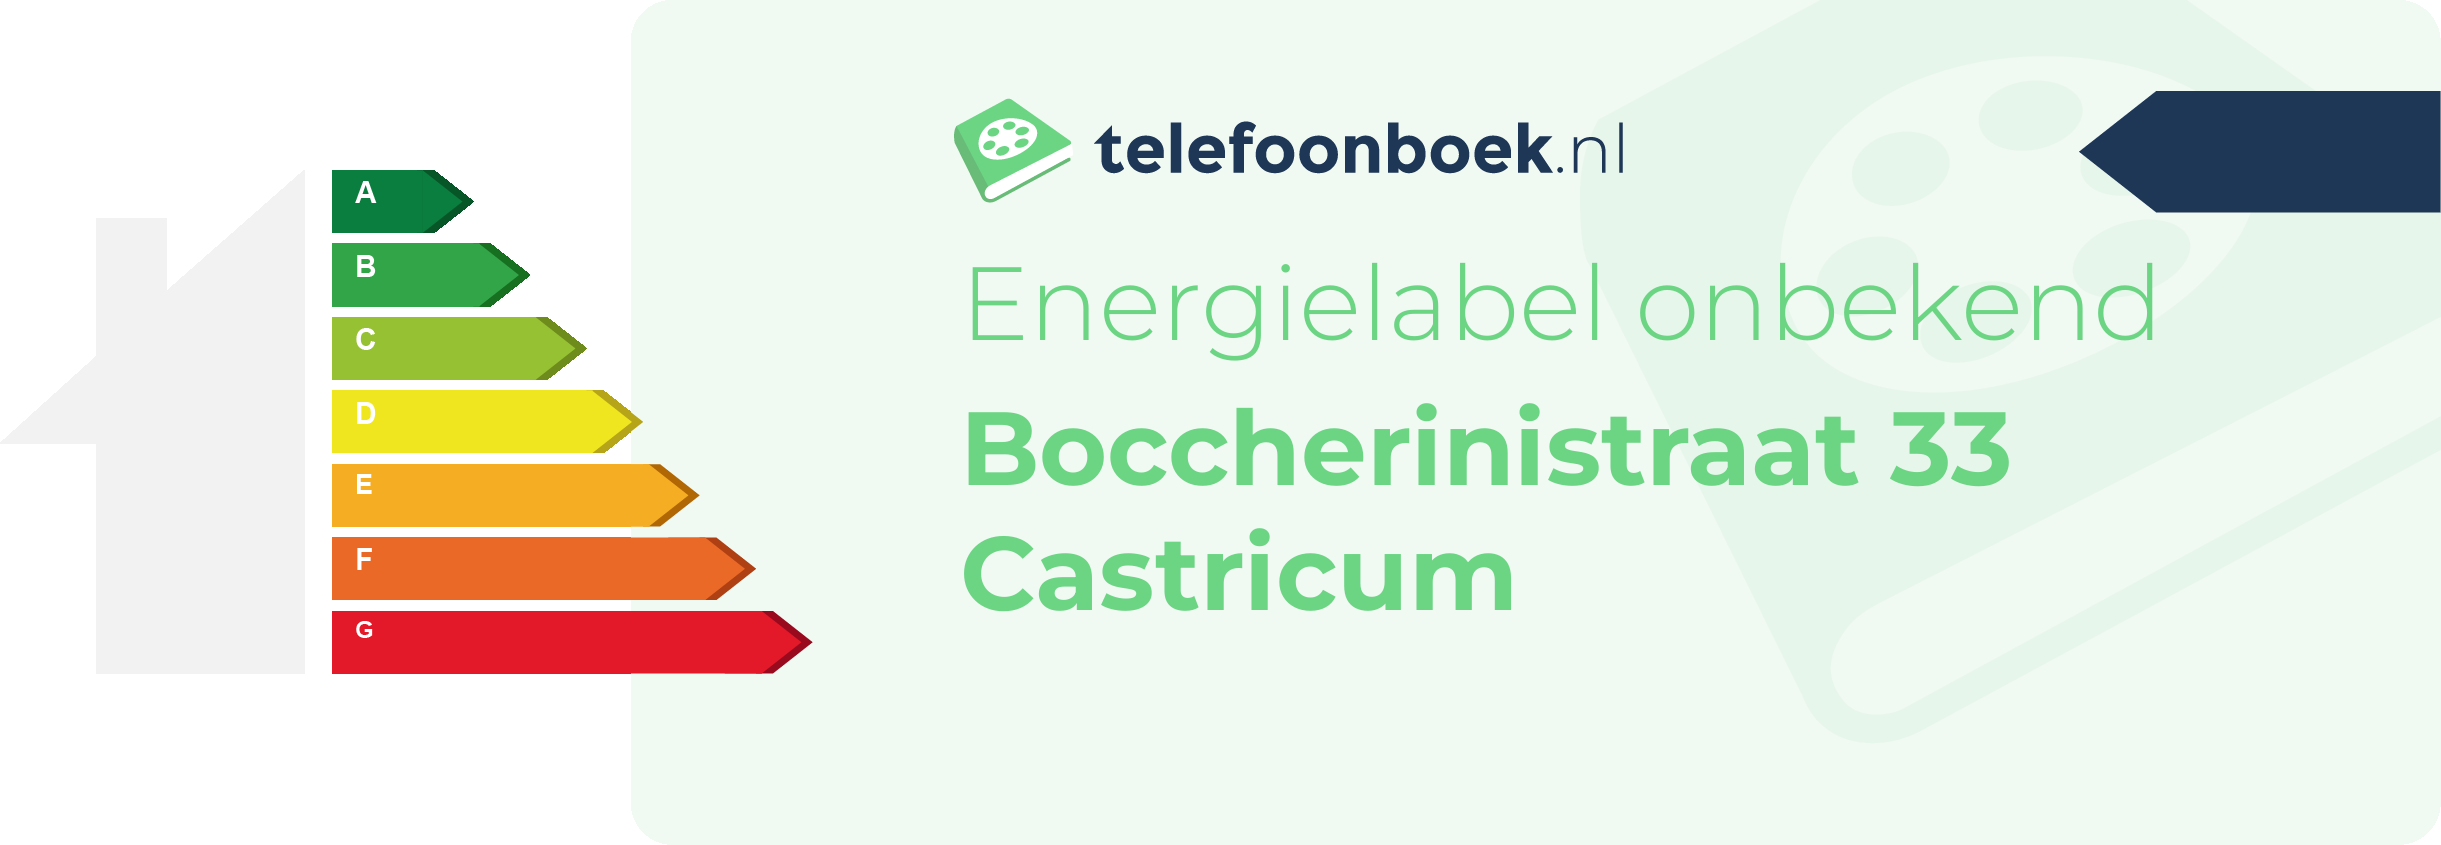 Energielabel Boccherinistraat 33 Castricum